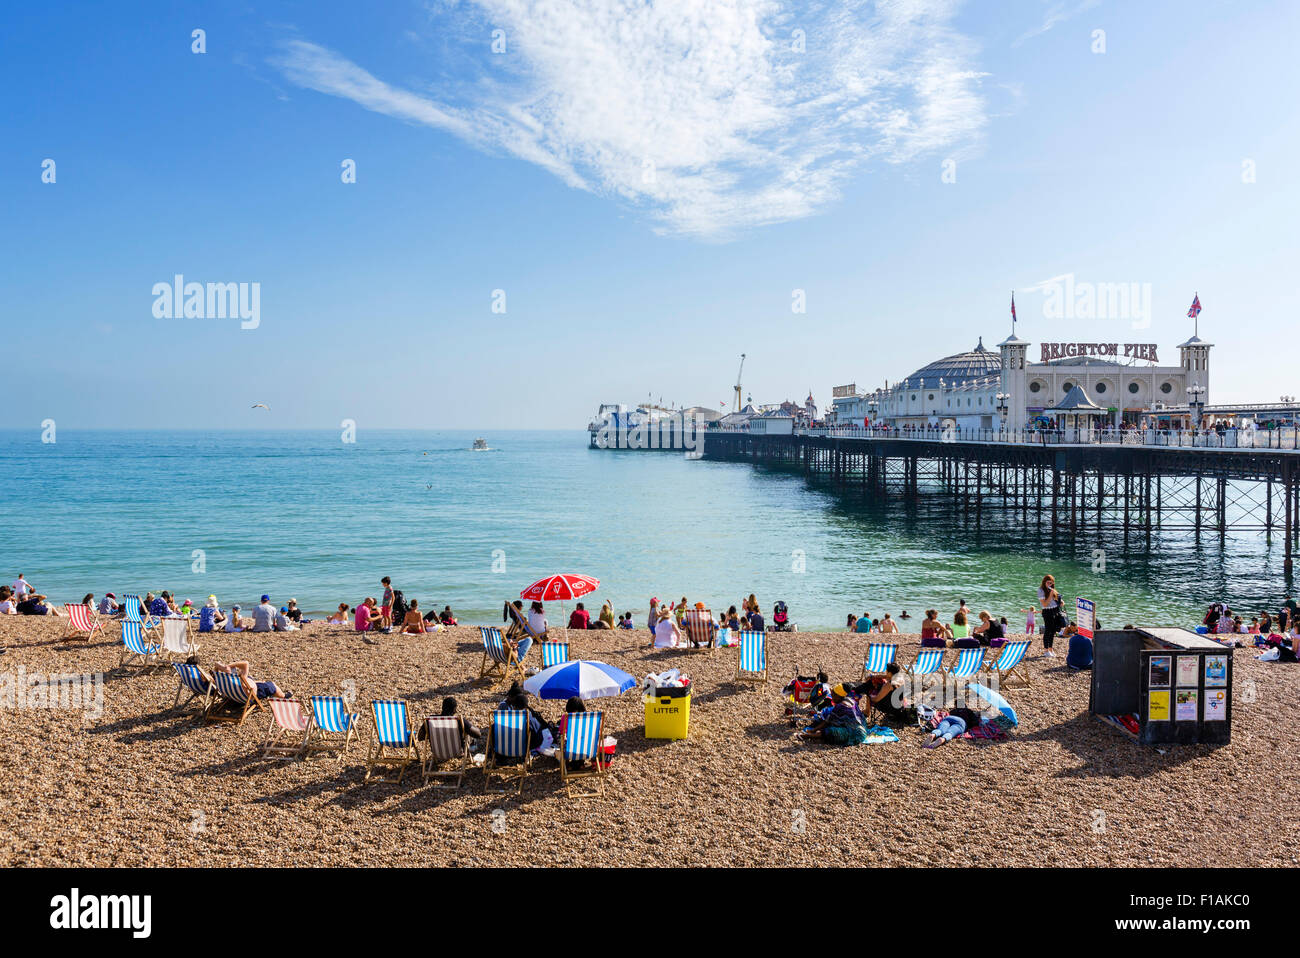 Brighton Pier, Brighton, East Sussex England, UK Stock Photo